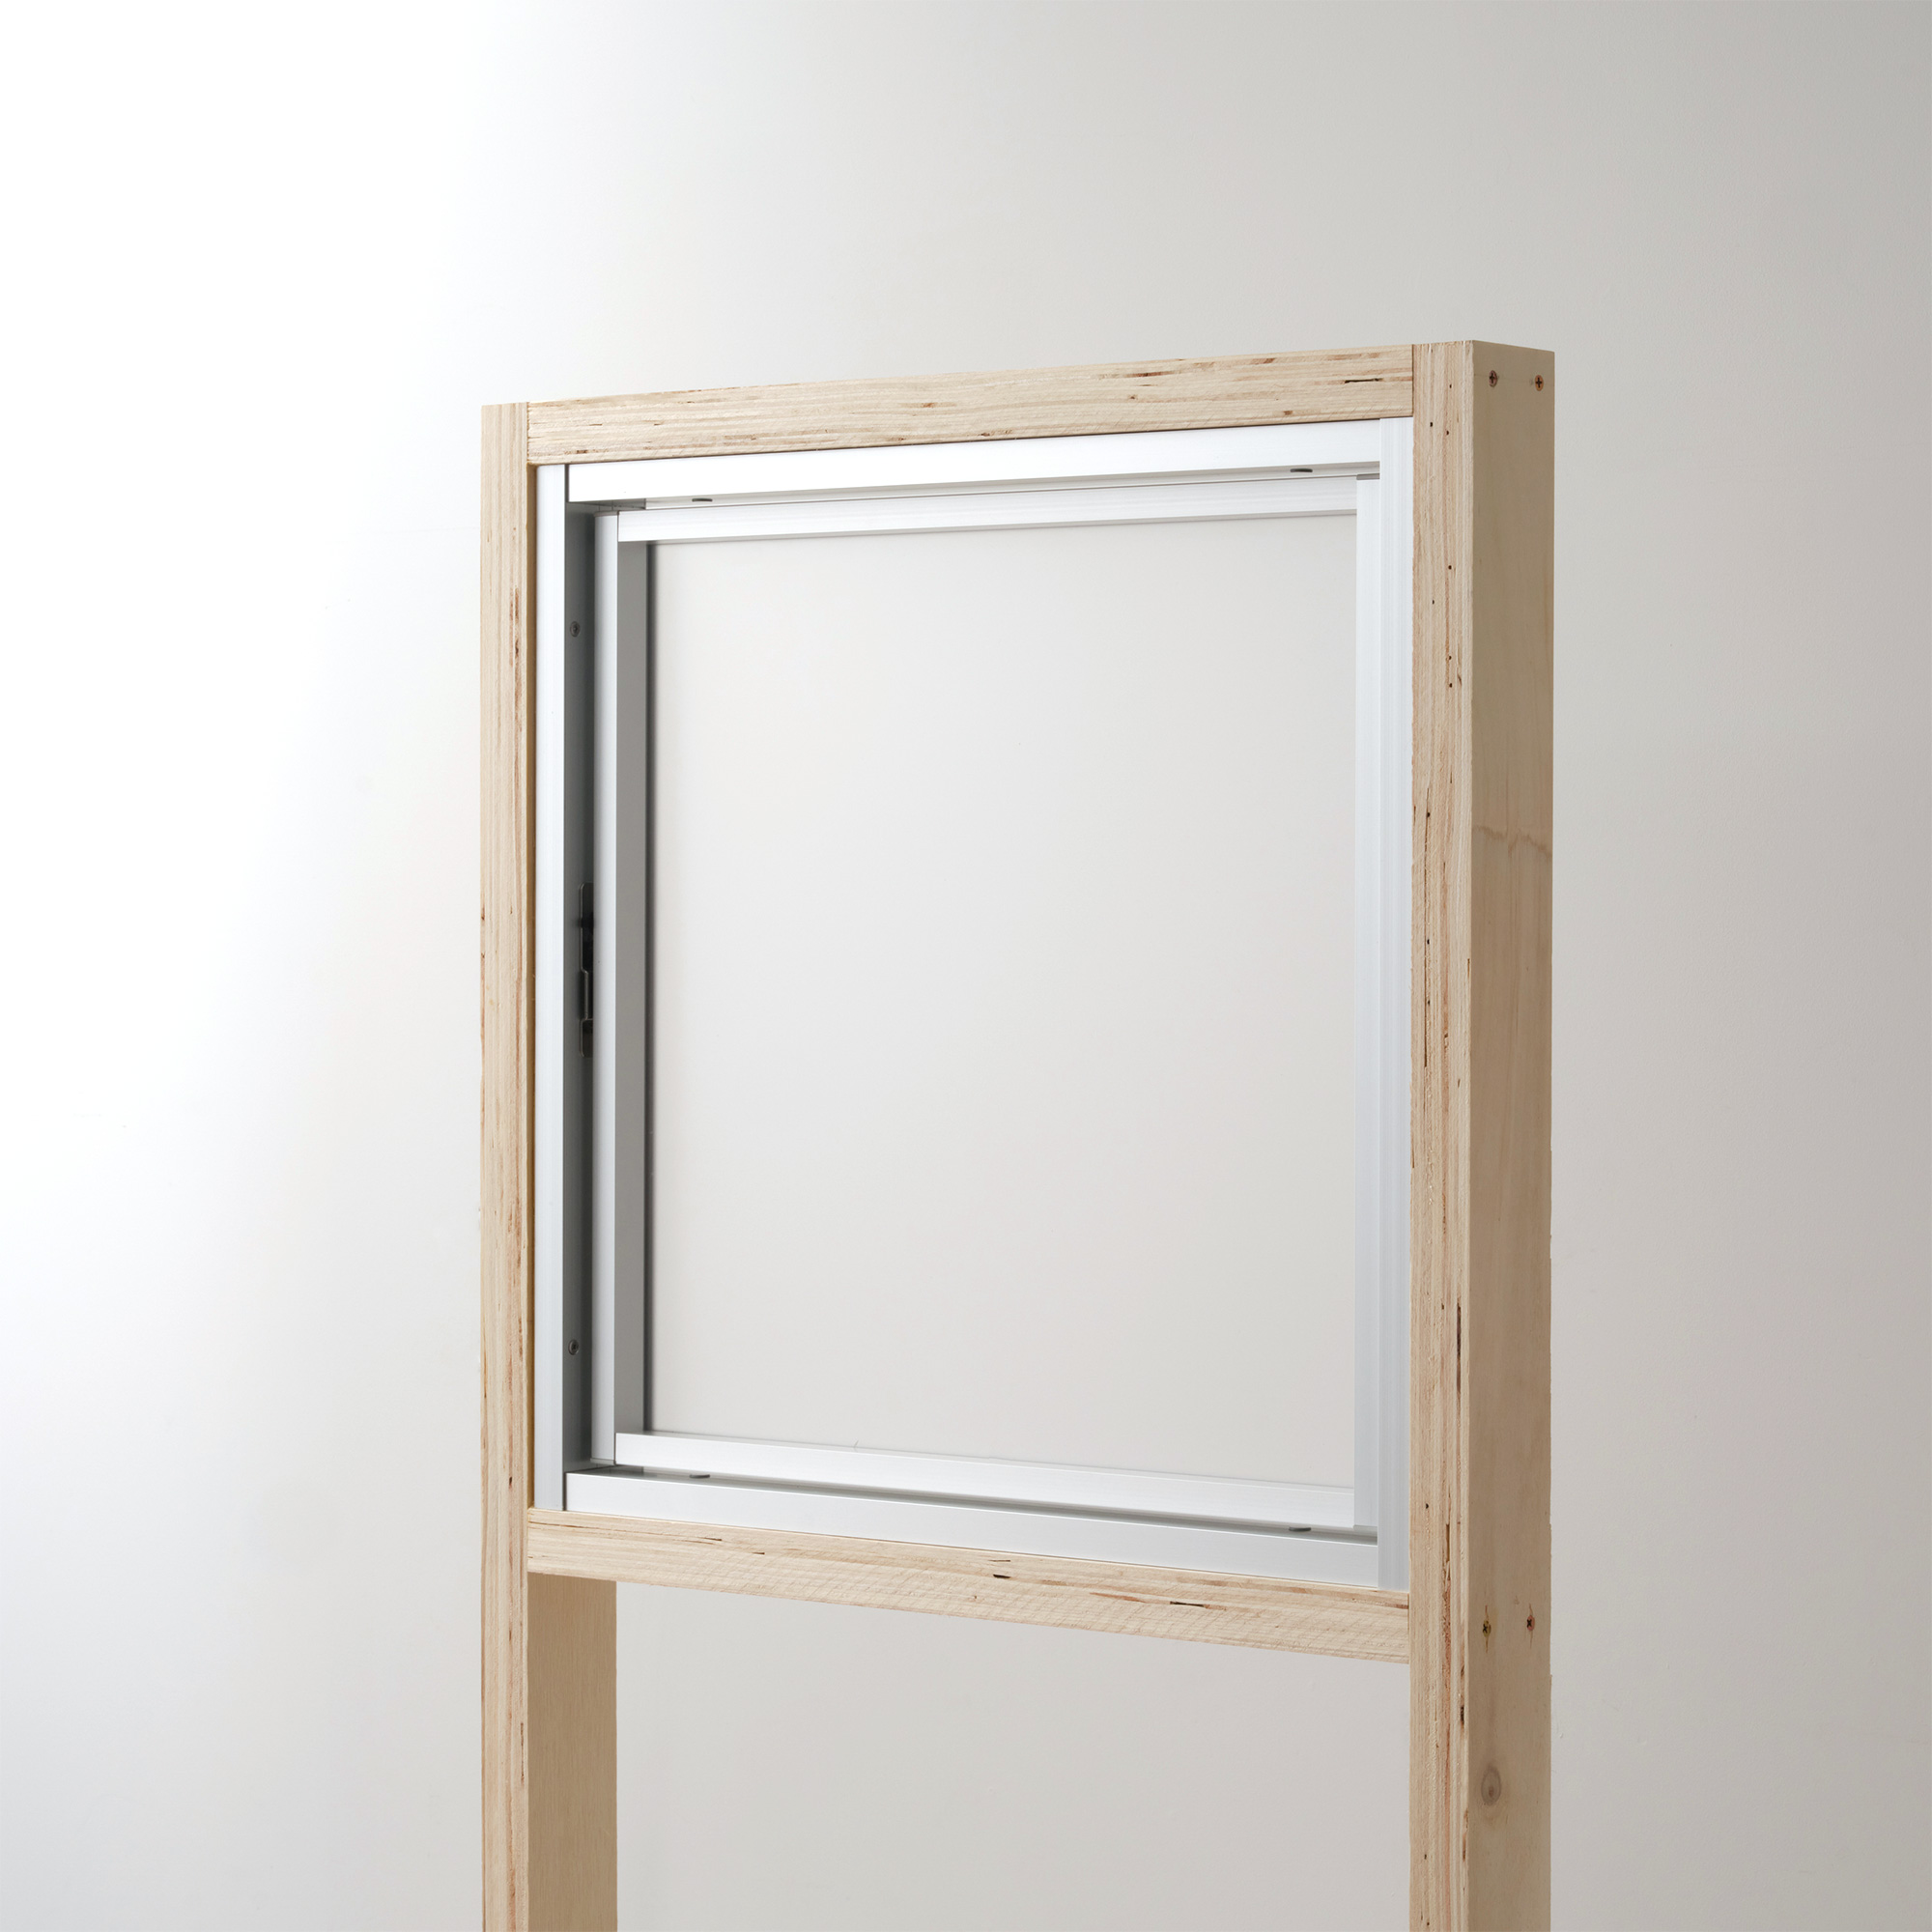 室内アルミサッシ FIX窓＋回転窓 シルバー ガラス DW-DR013-15-G201 回転窓 W500 H500 マット樹脂パネル